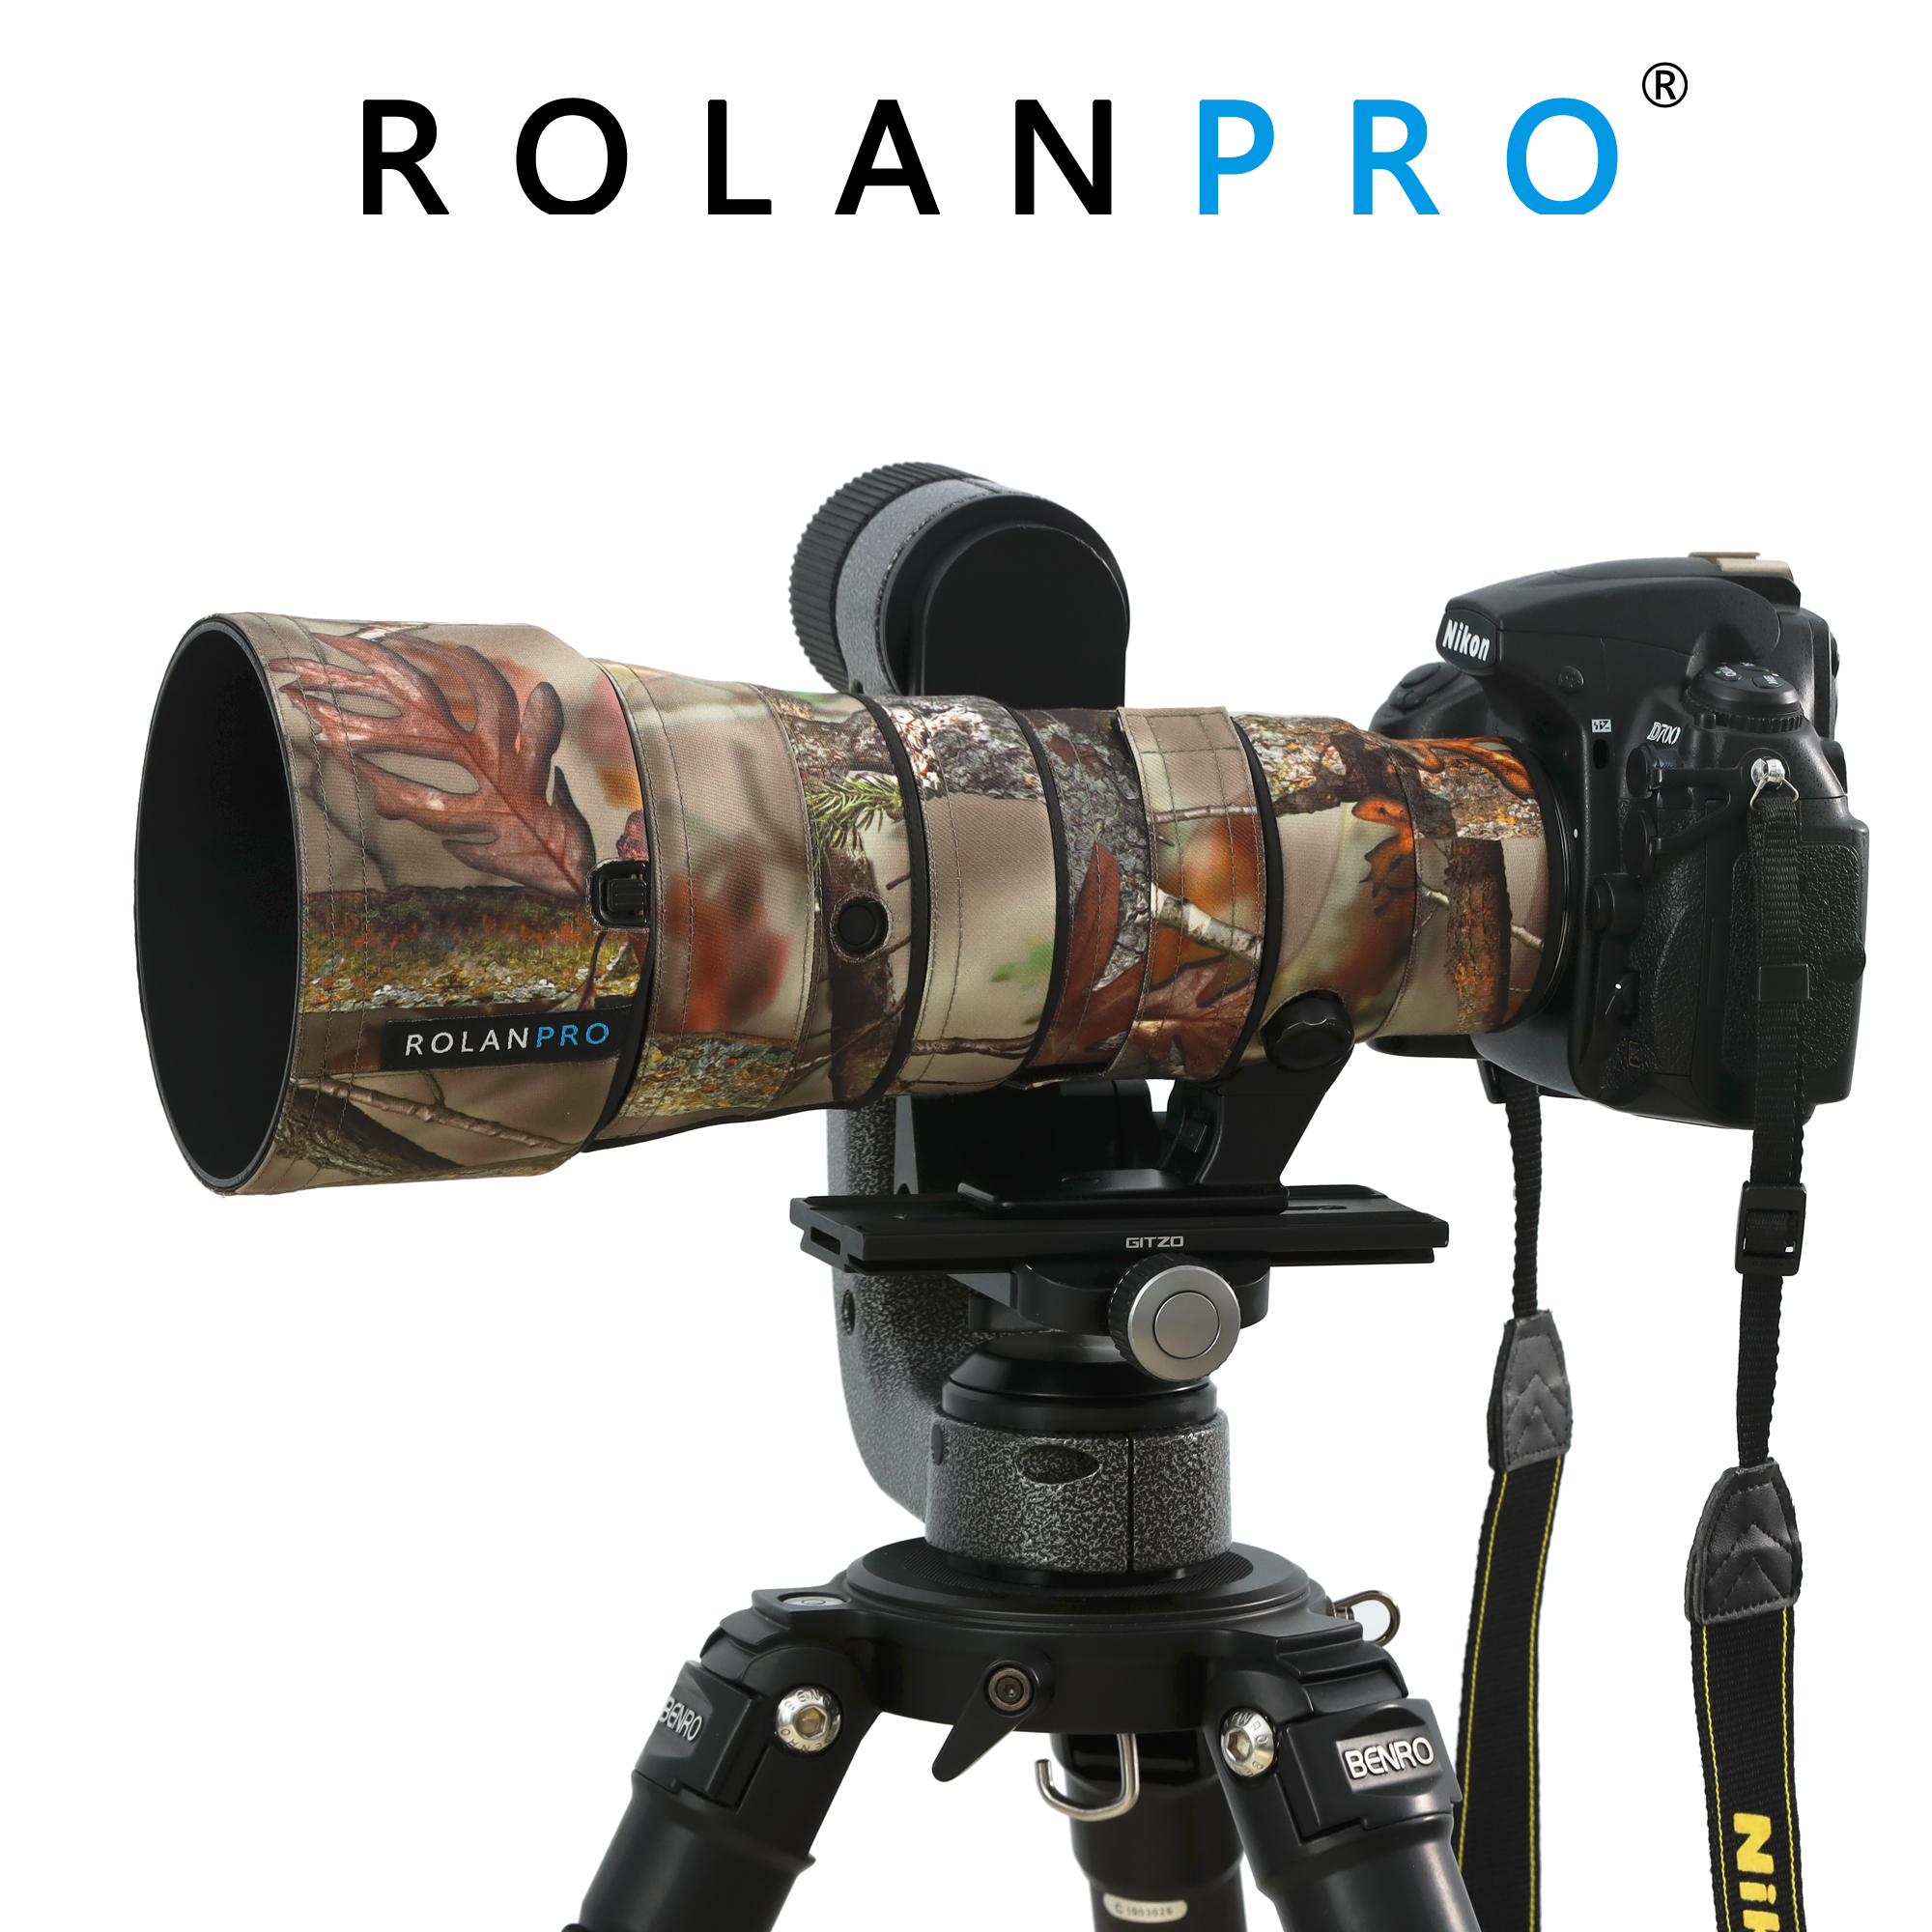 ROLANPRO 방수 렌즈 위장 코트 레인 커버 니콘 AF-S 500 미리메터 F5.6E PF ED VR 렌즈 보호 케이스 Nikon 카메라